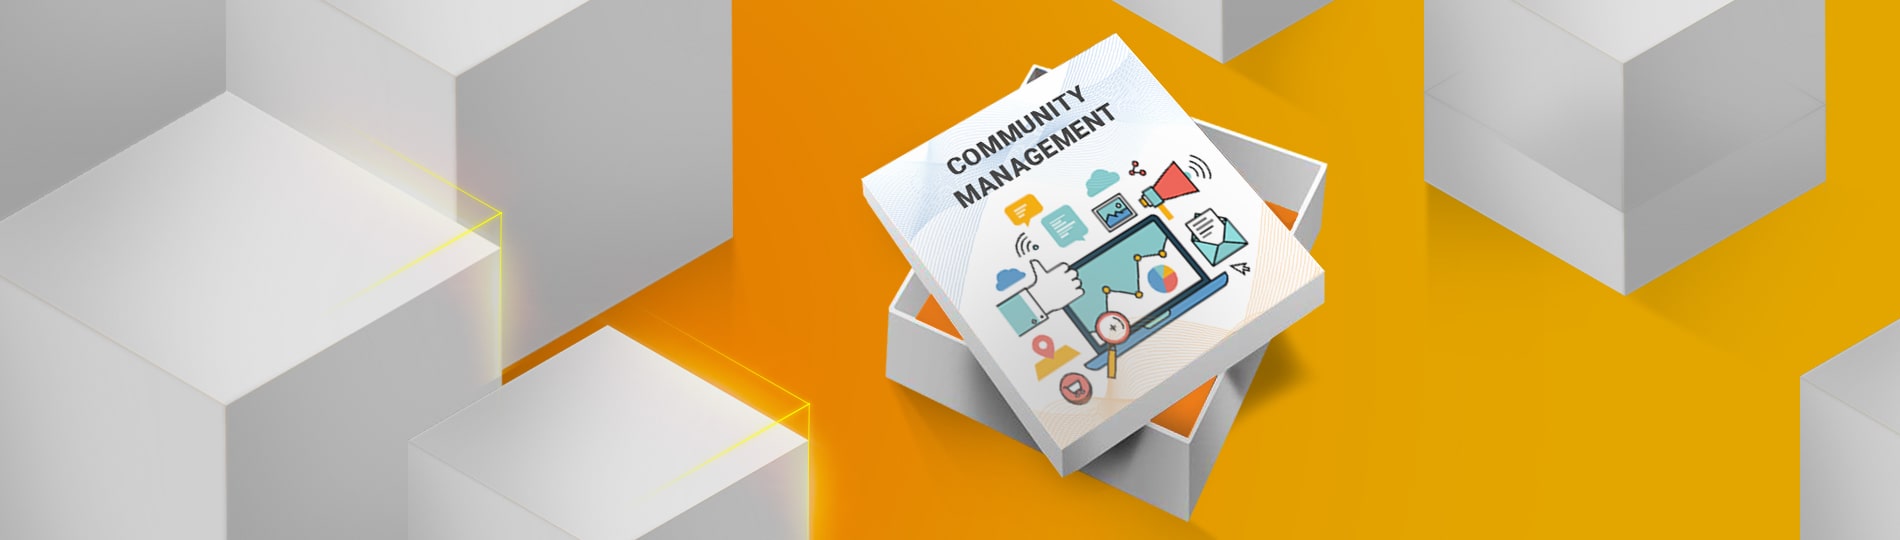 Services et offres de community management